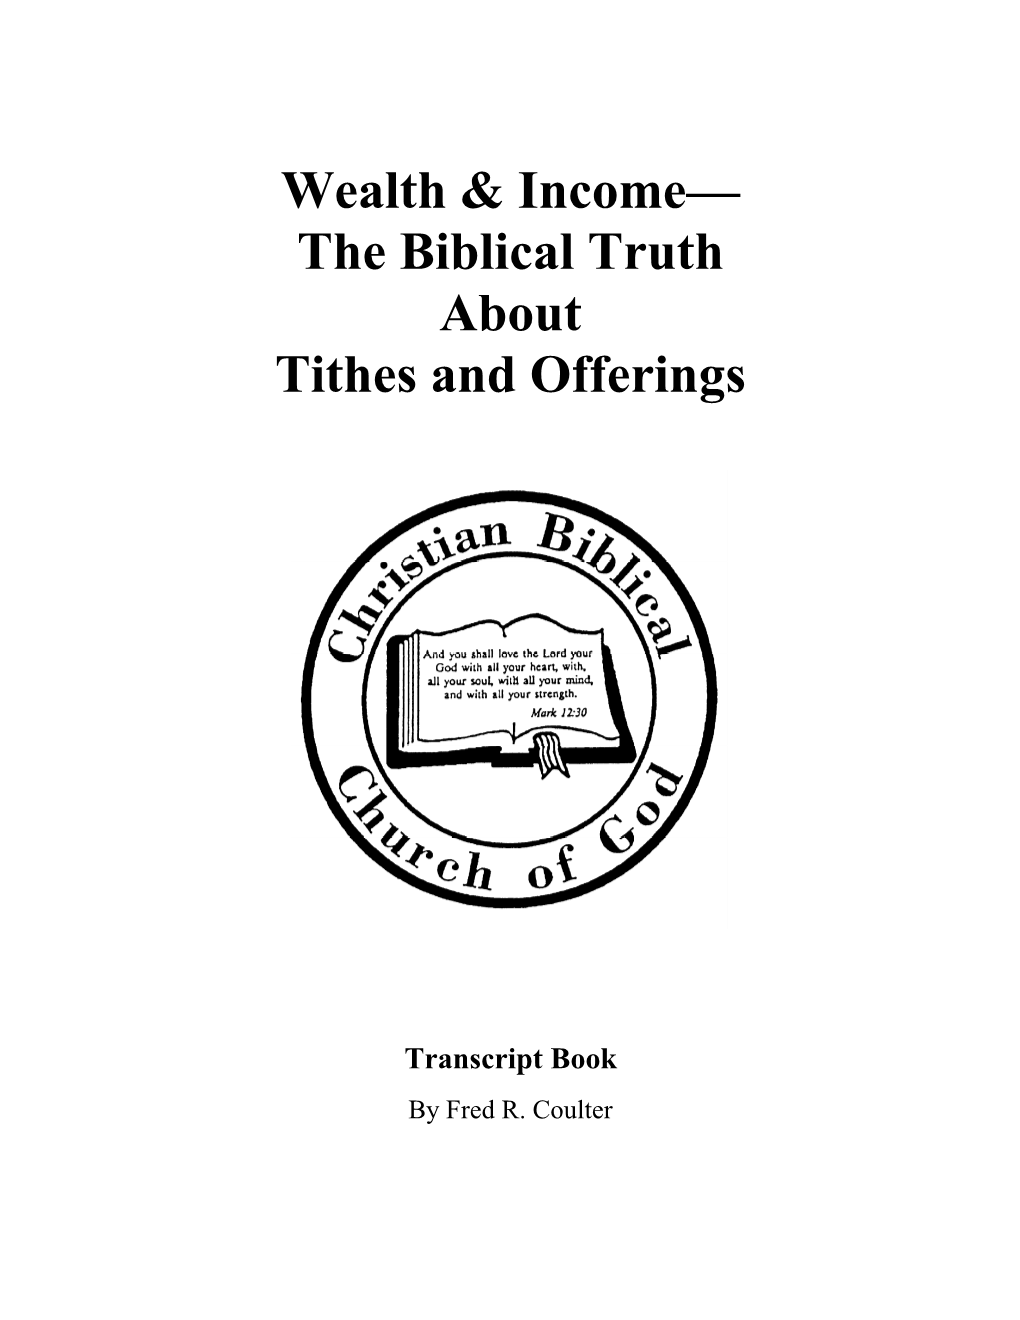 Tithing Series #1 Urban Economics of Jesus’ Time